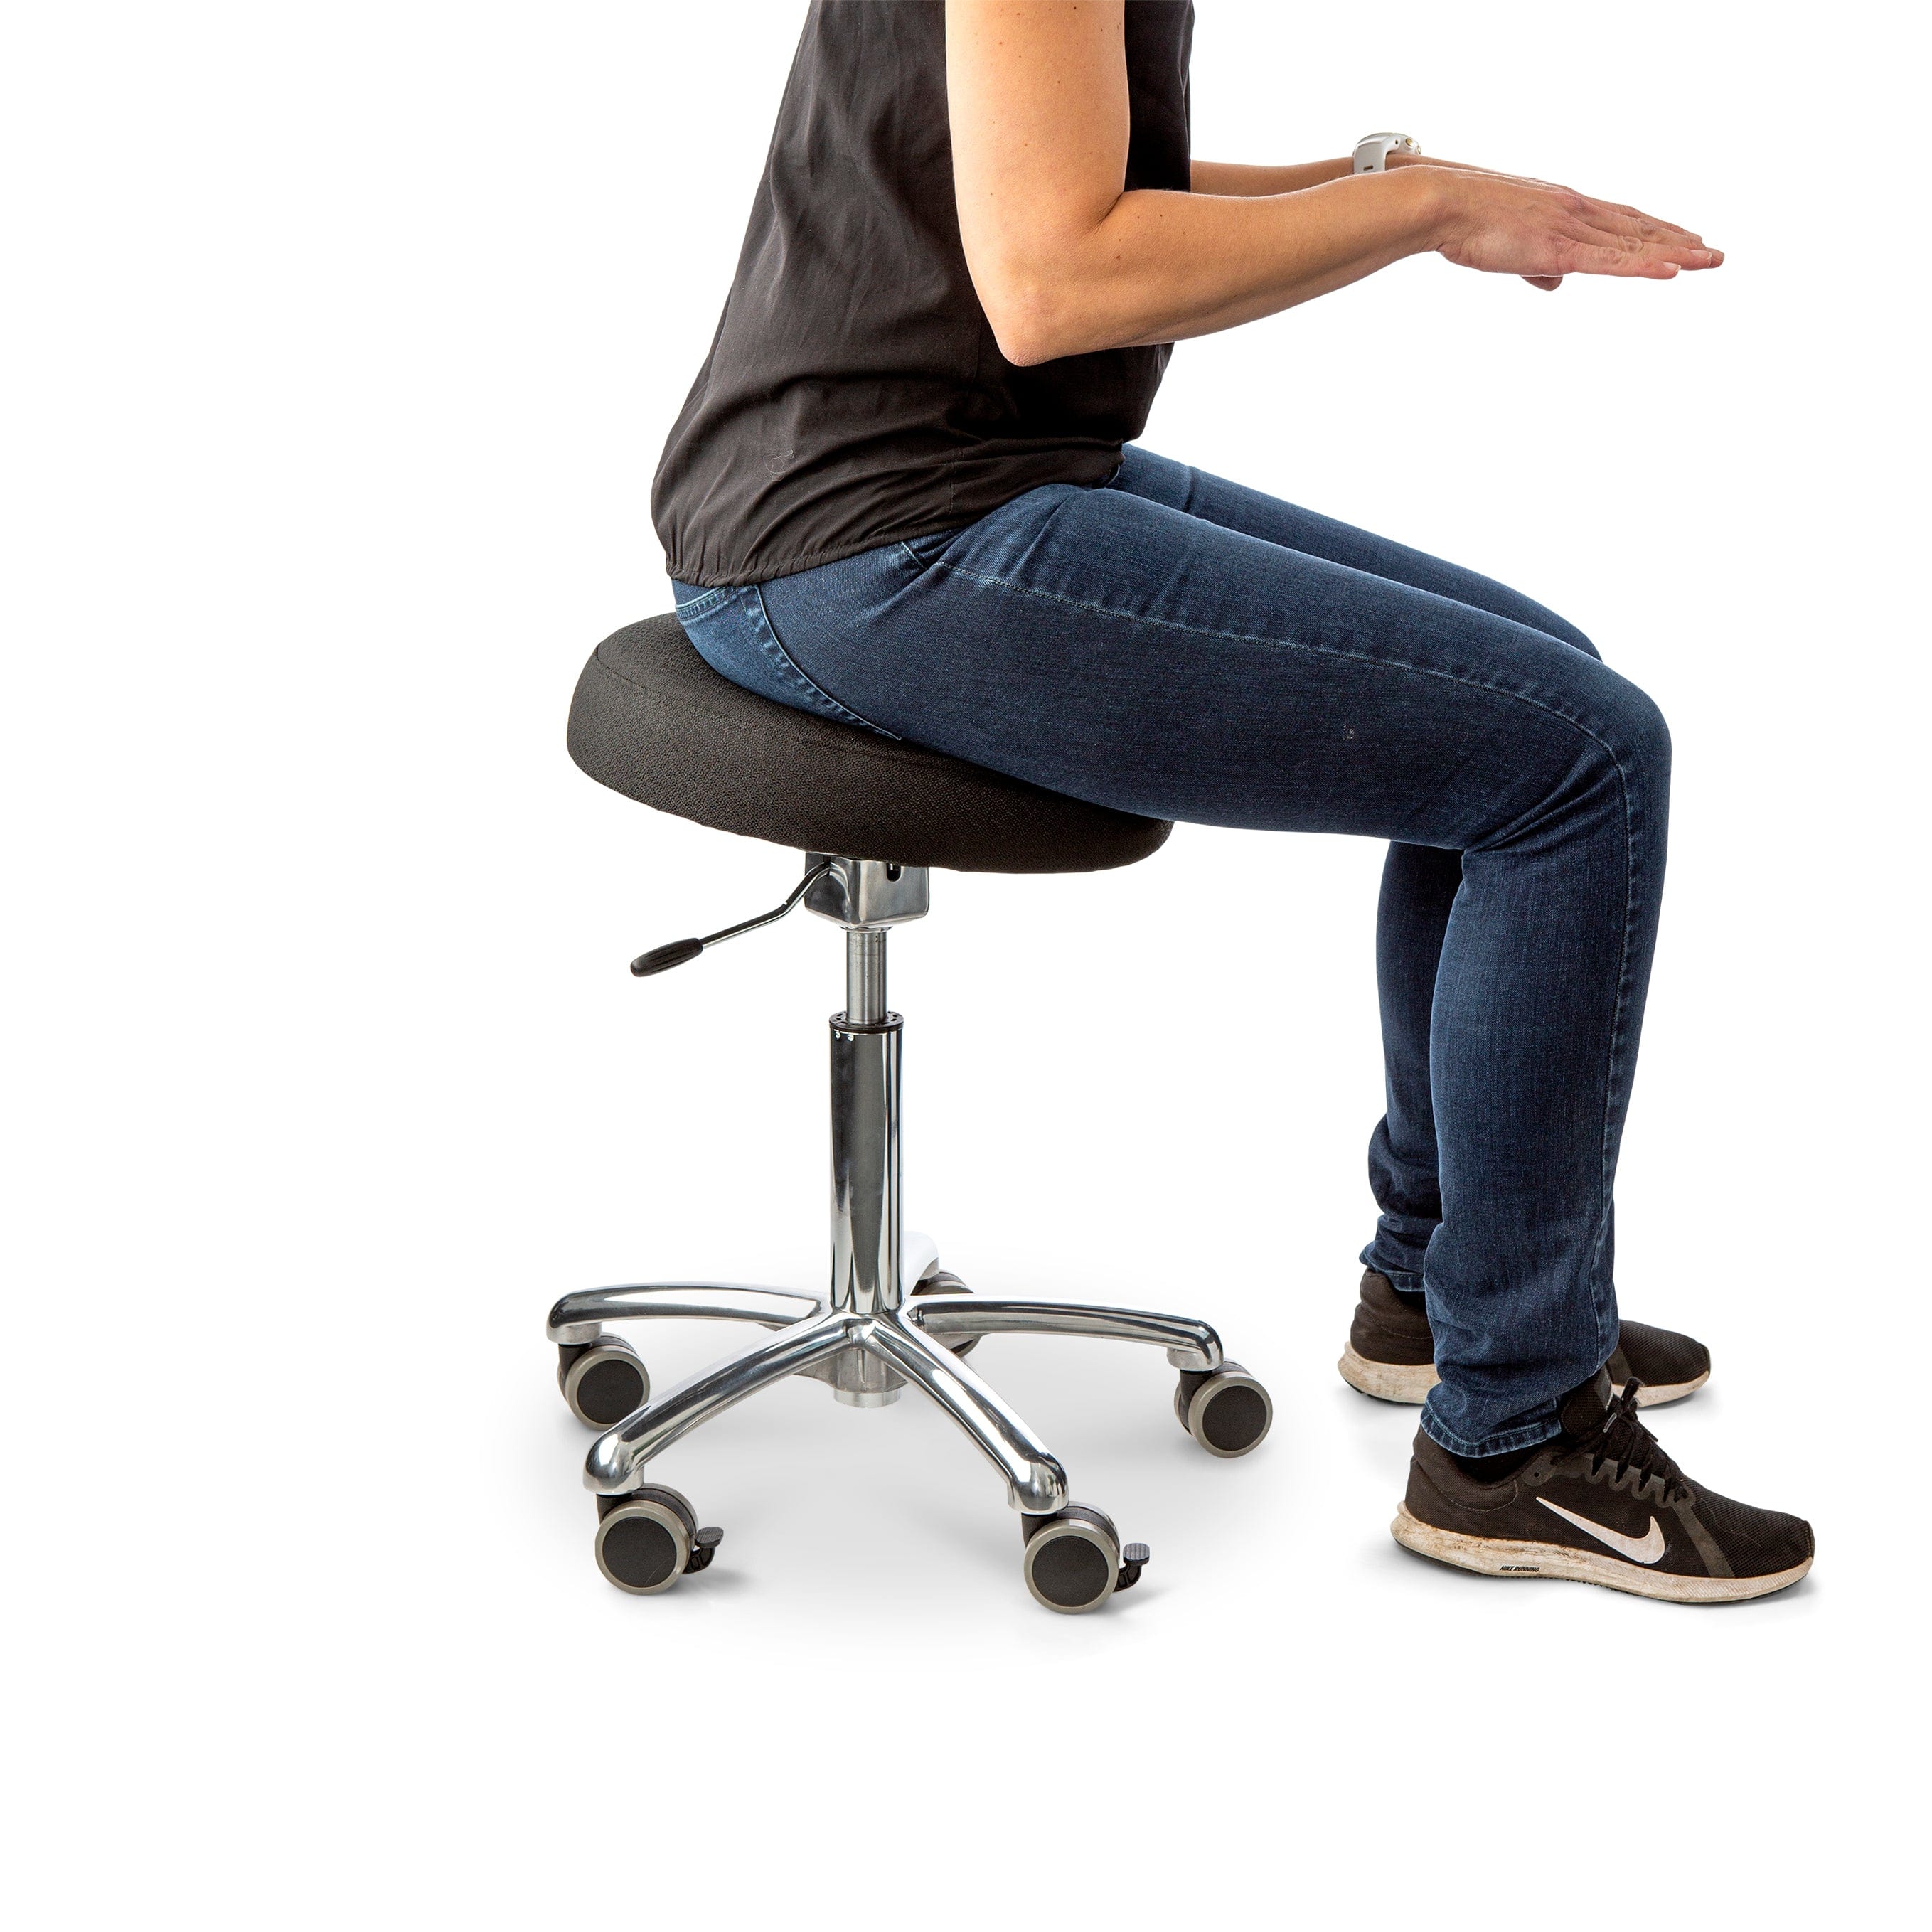  Active Balance 360 aktivstol - Aktiva stolar och sitsar, hemmakontor, koncentrationssvårigheter, kontor, ryggbesvär, Stolar, trötthet - ErgoFinland